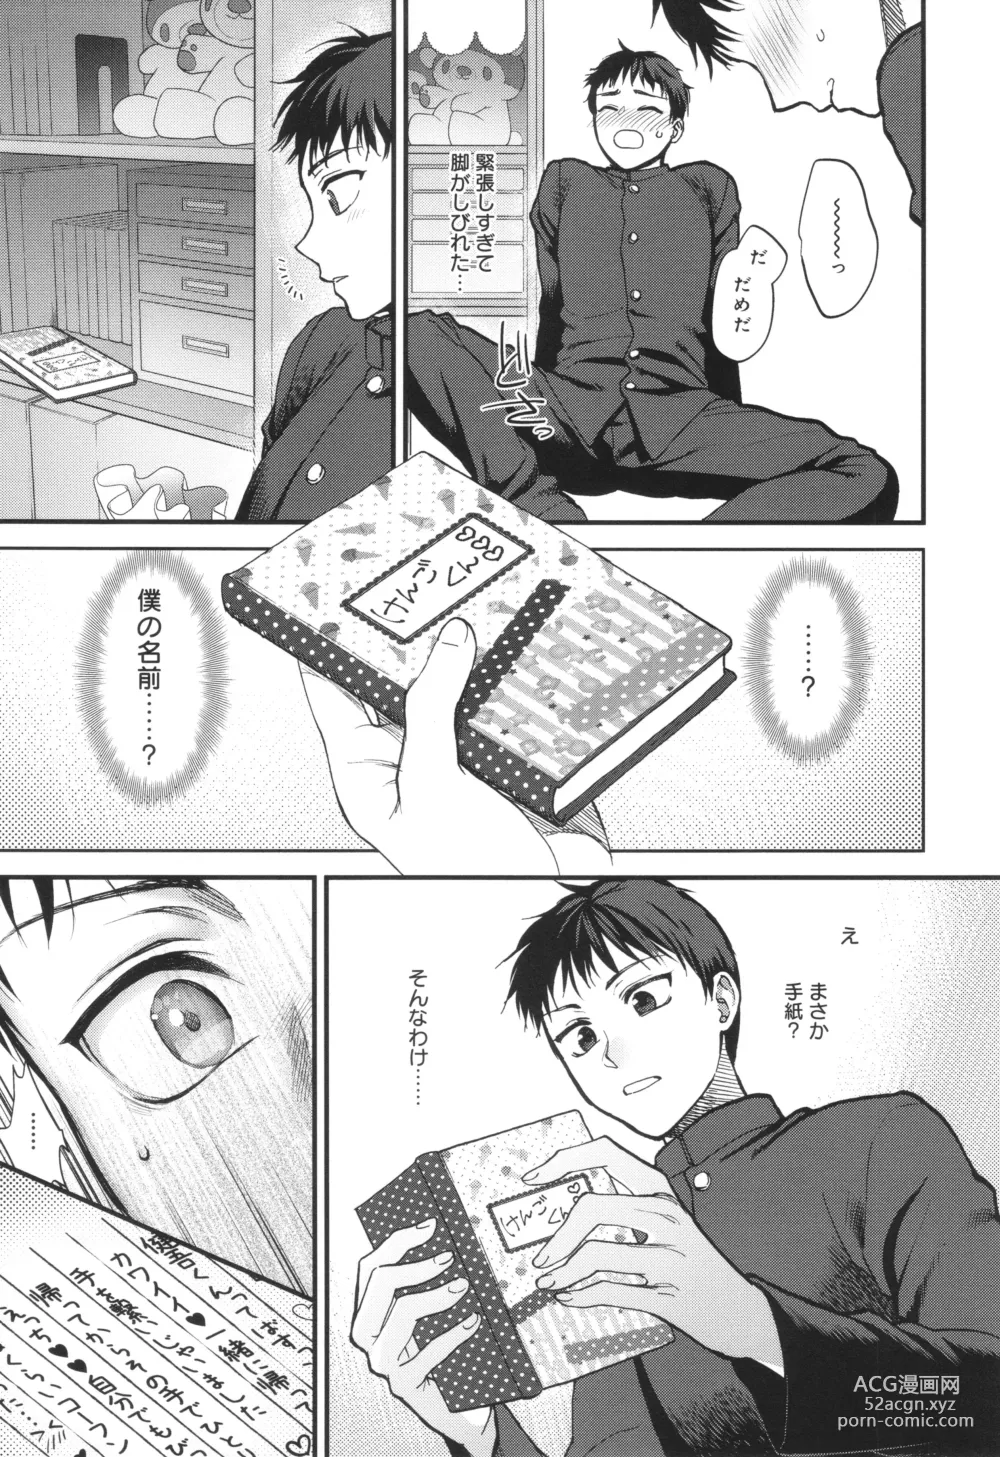 Page 204 of manga Mou Sukoshi Dake, Kono mama de